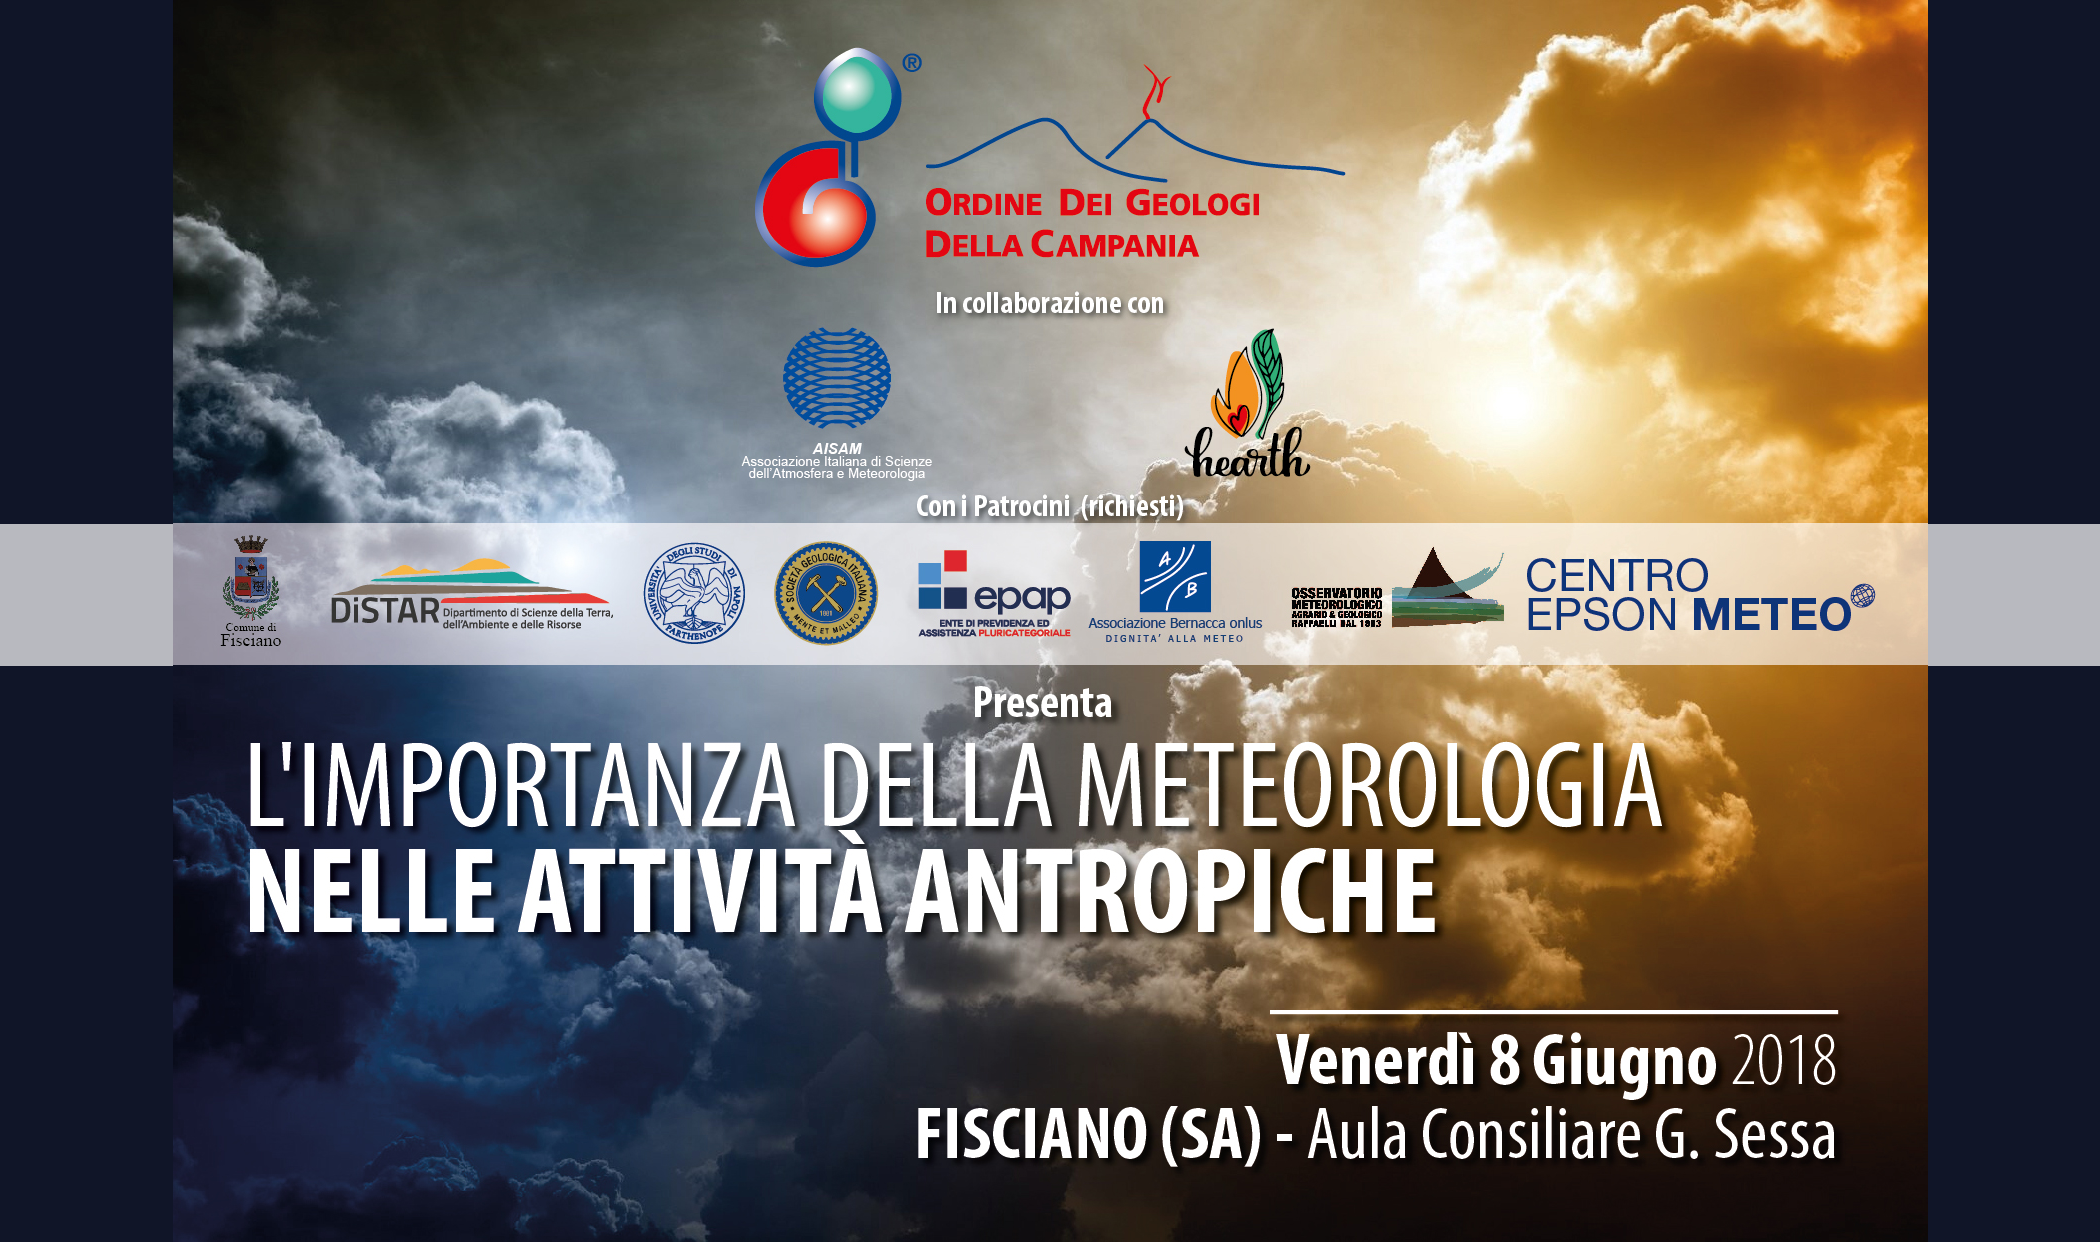 Genea Consorzio al Convegno sulla meteorologia a Fisciano